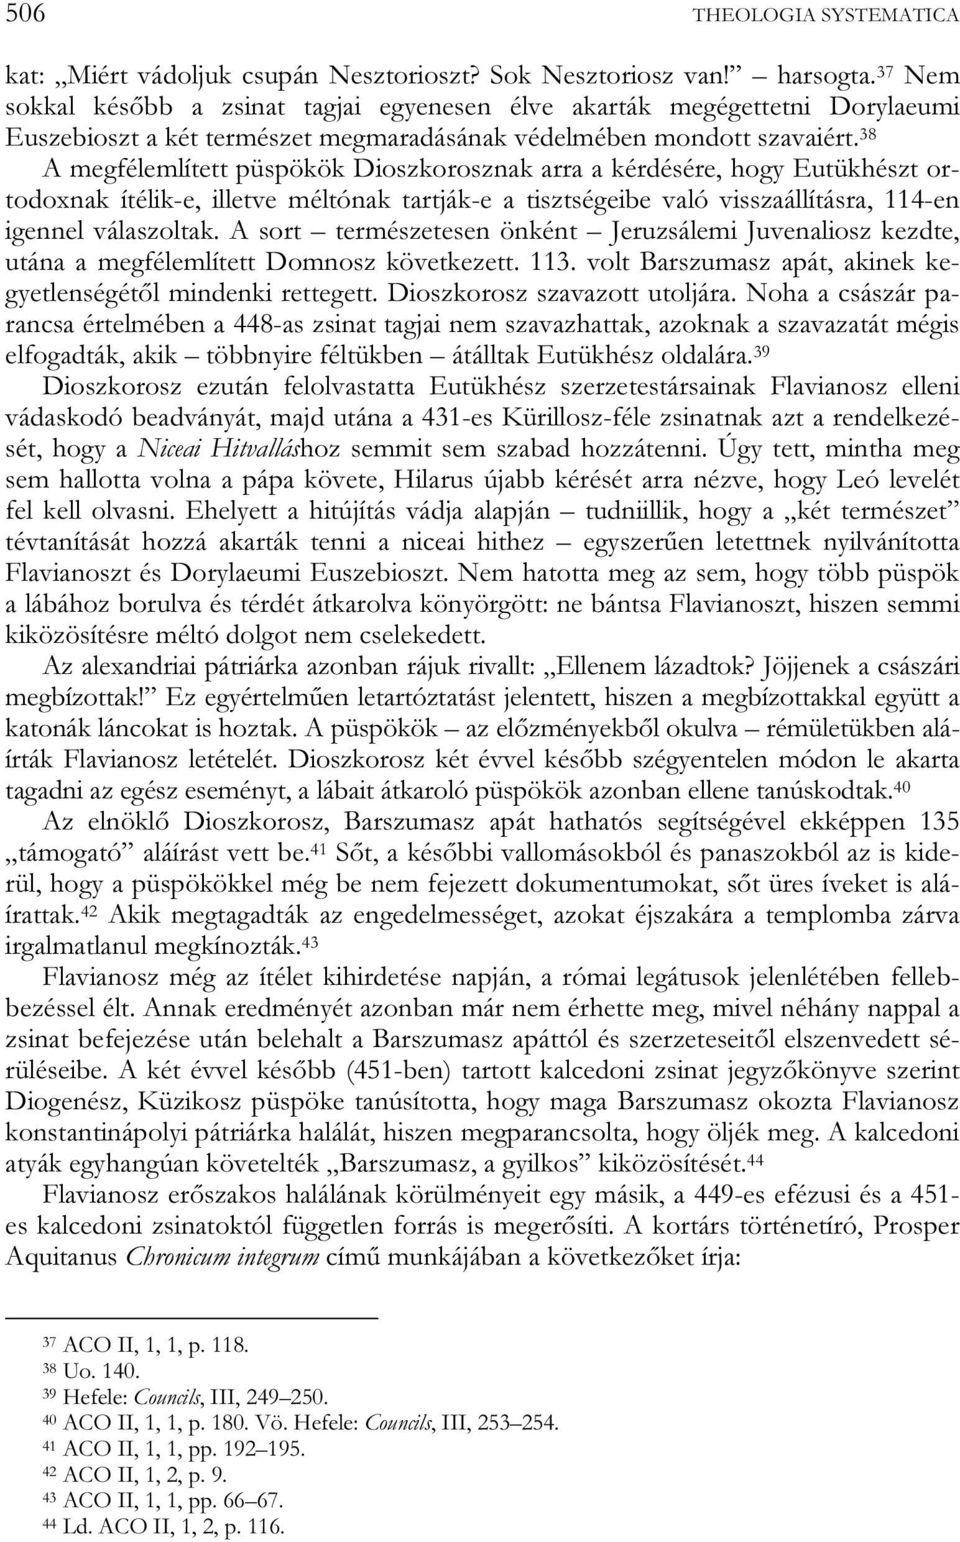 38 A megfélemlített püspökök Dioszkorosznak arra a kérdésére, hogy Eutükhészt ortodoxnak ítélik-e, illetve méltónak tartják-e a tisztségeibe való visszaállításra, 114-en igennel válaszoltak.